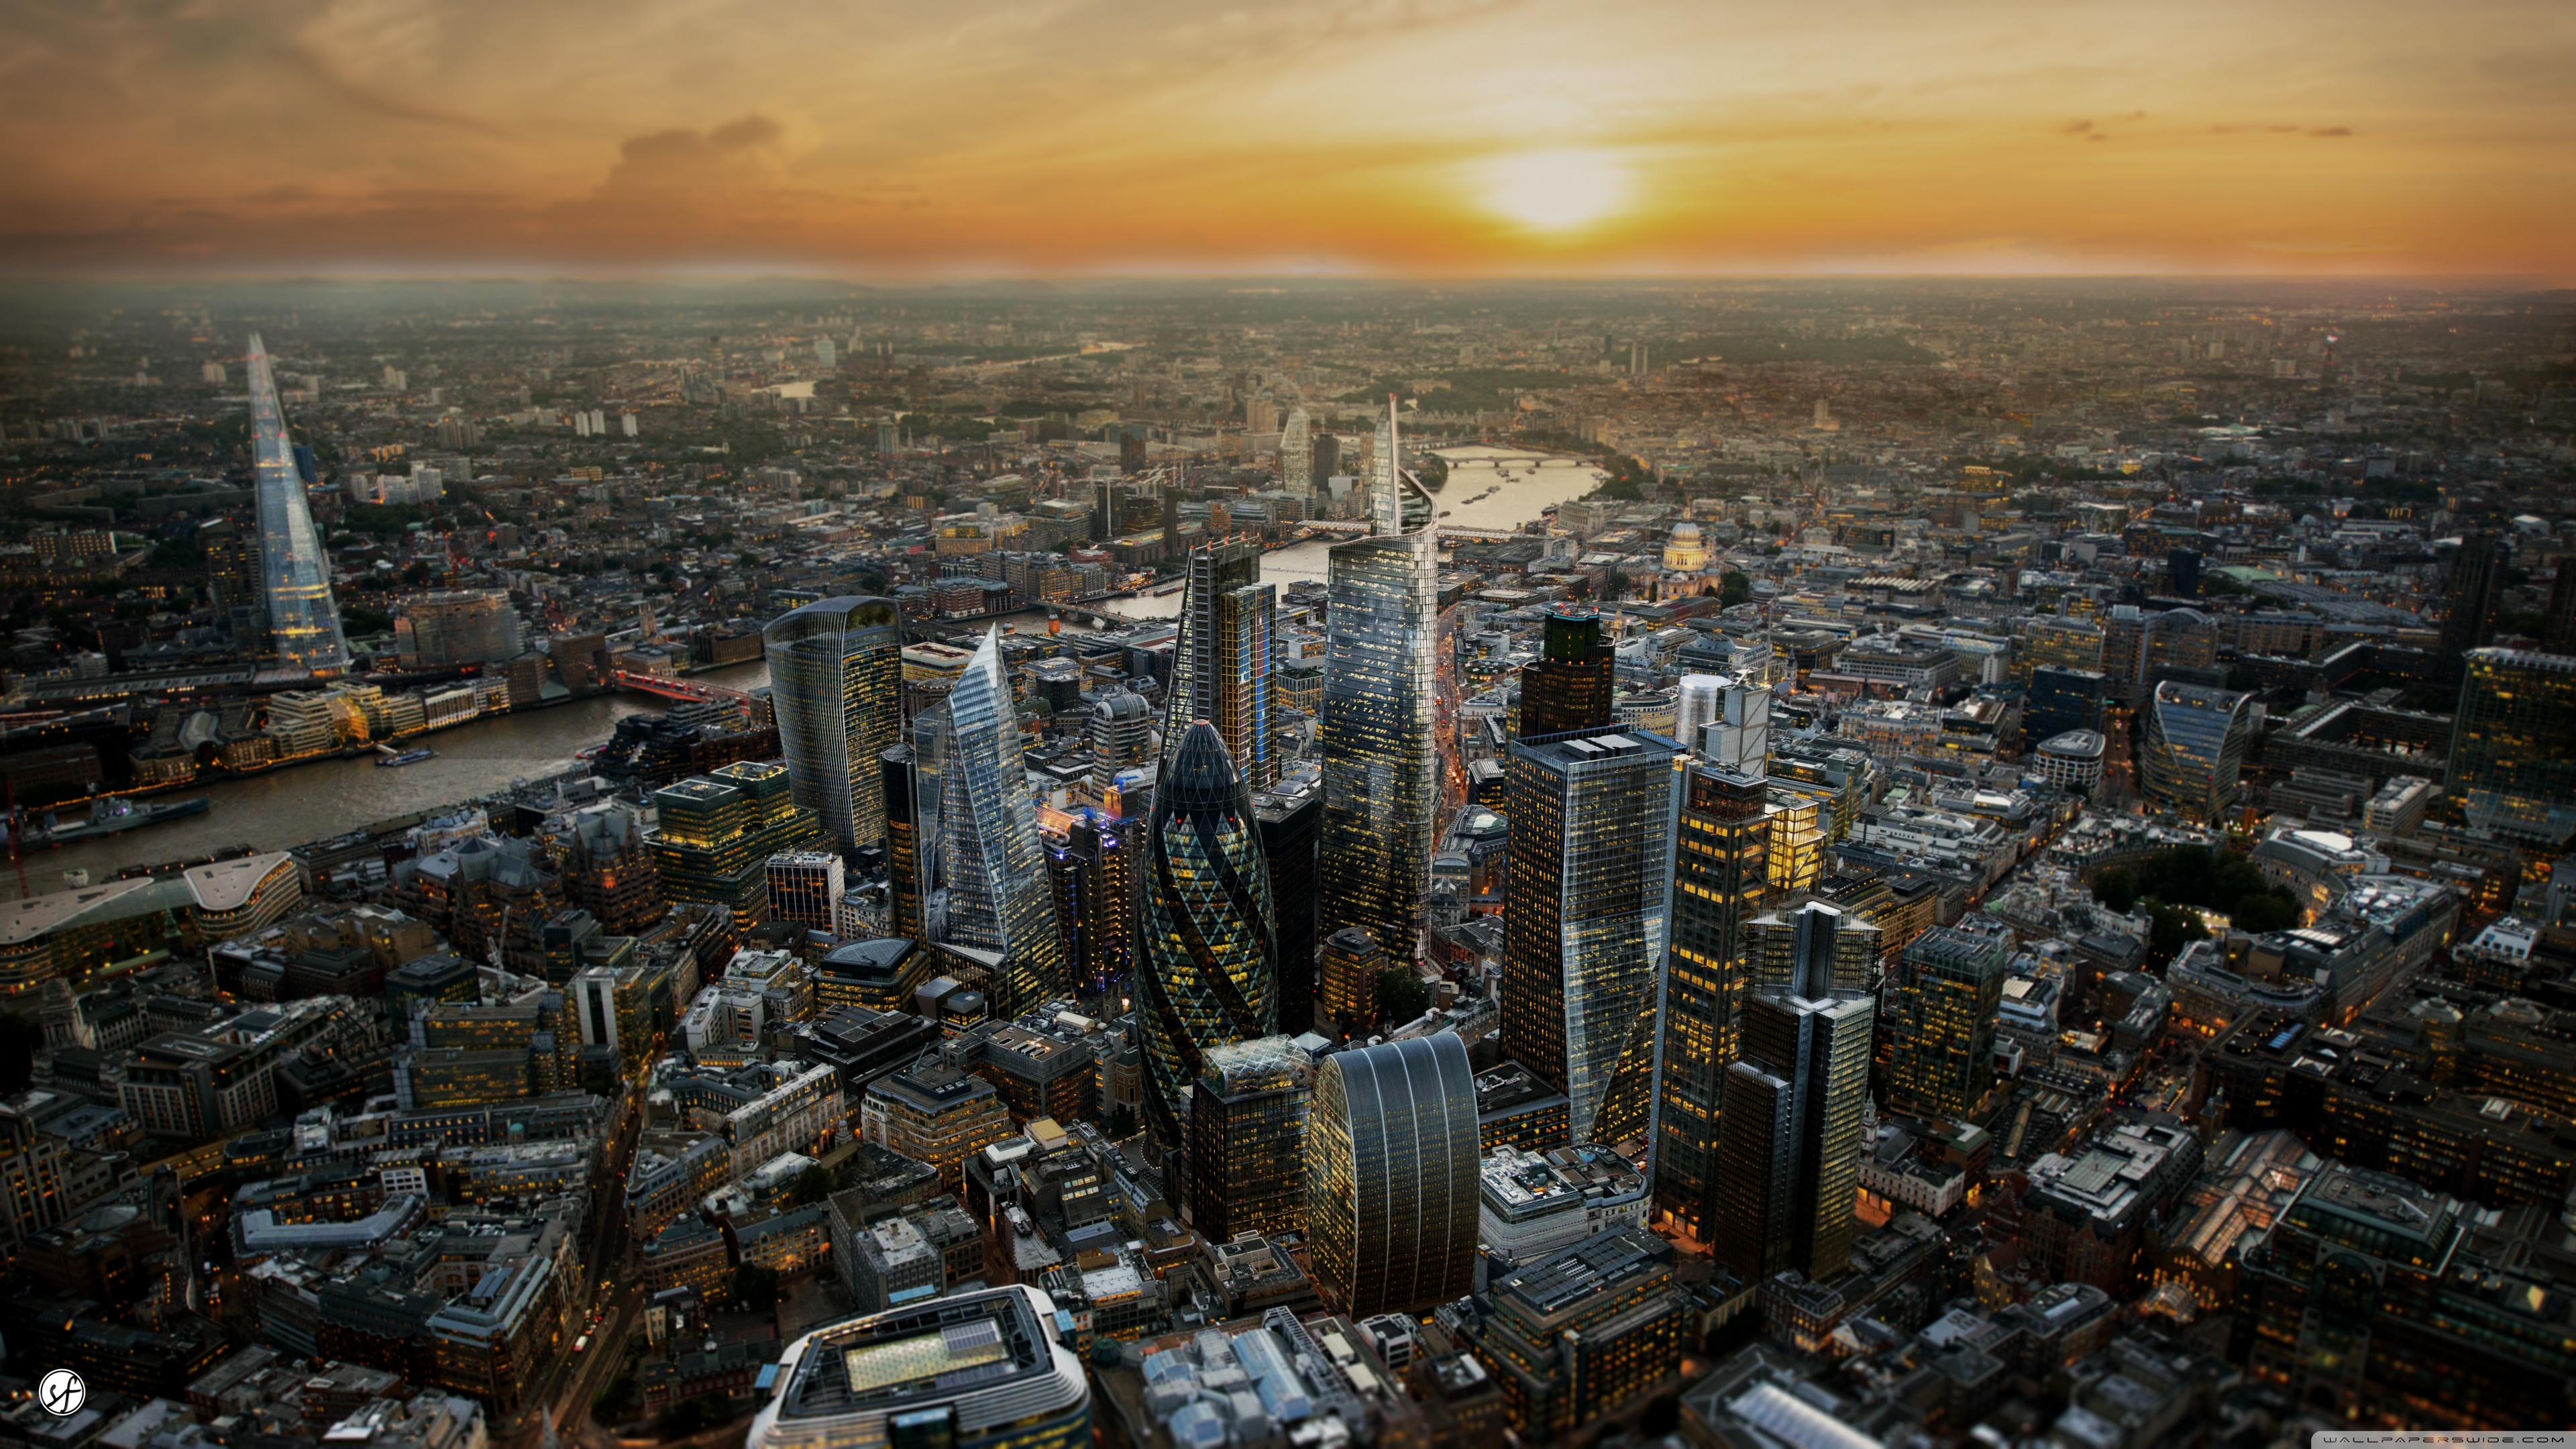 ロンドンの壁紙,都市の景観,首都圏,市街地,市,空中写真